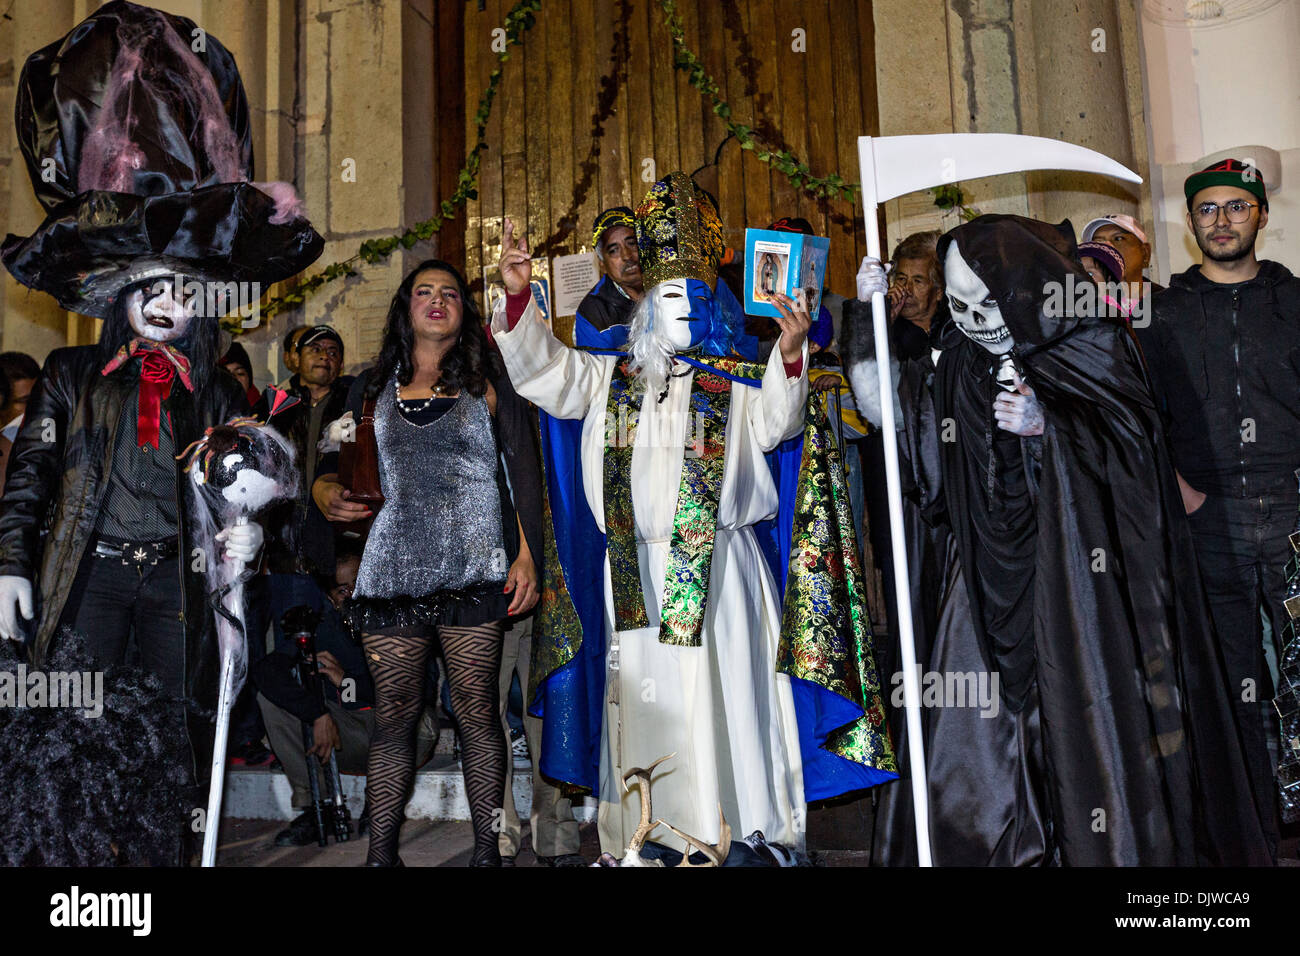 Costume di festeggianti sfilano per le strade per celebrare il Giorno dei Morti Festival noto in spagnolo come Día de Muertos il 1 novembre 2013 a San Agustin Etla, Oaxaca, Messico. Foto Stock